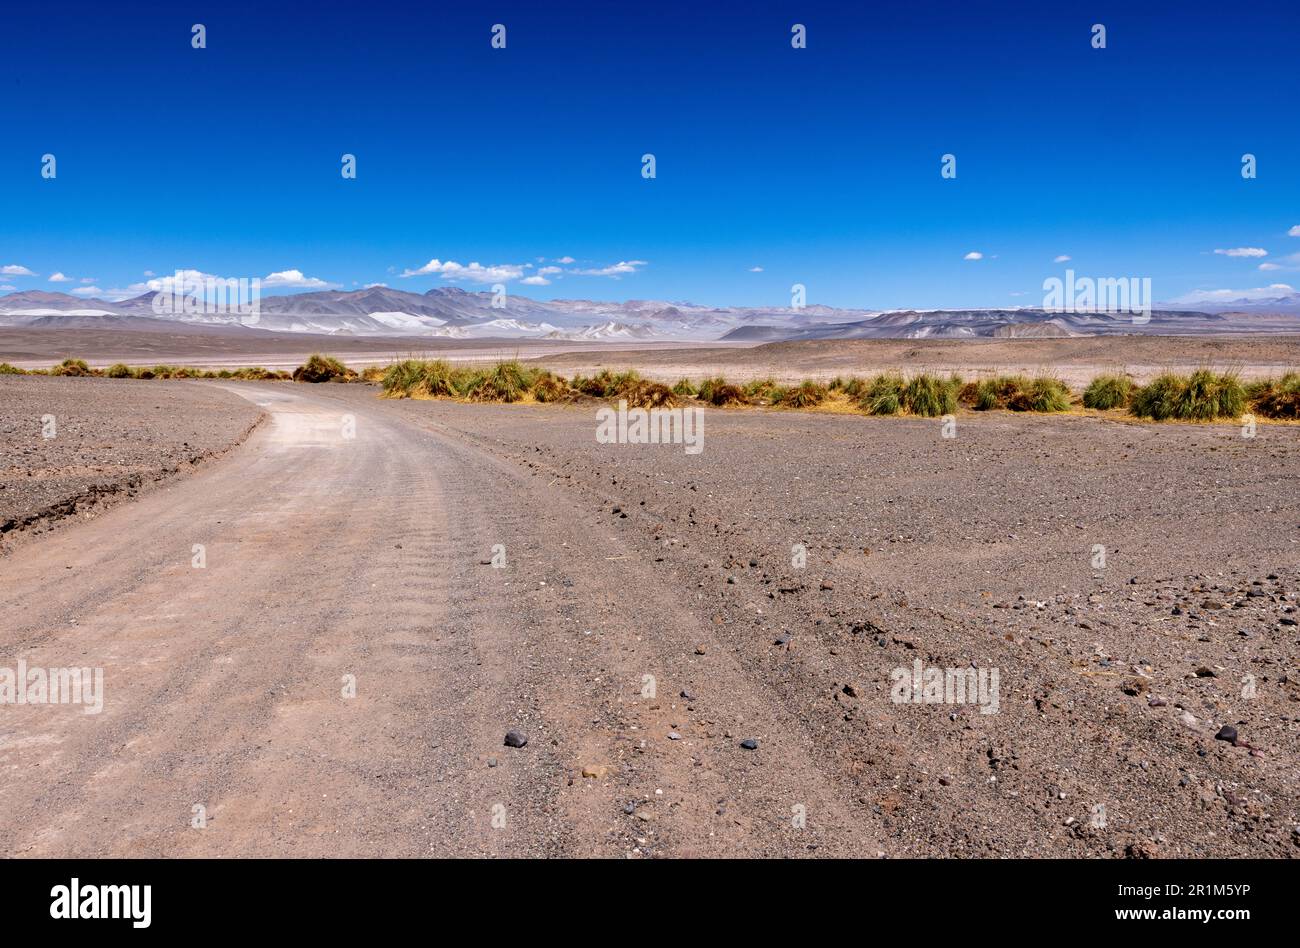 Puna - avventura fuoristrada attraverso un paesaggio bizzarro ma bellissimo con un campo di pomice, rocce vulcaniche e dune di sabbia nel nord dell'Argentina Foto Stock